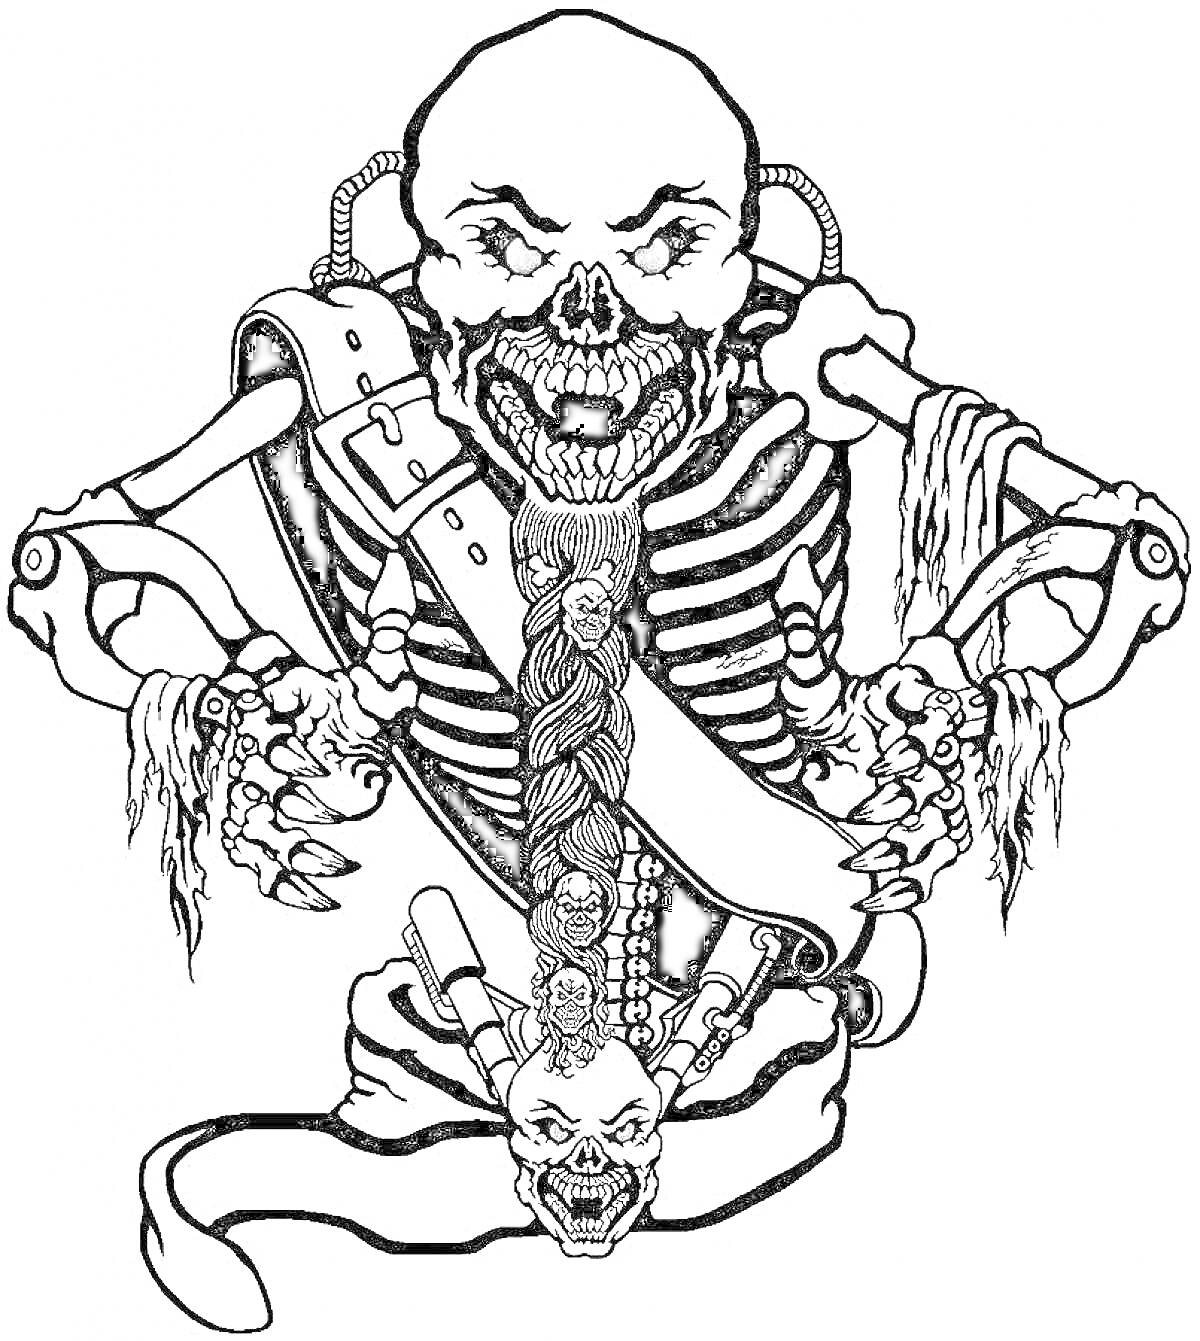 Скелет с красными глазами, ремнем через плечо, металлическими трубками на спине и черепом на поясе